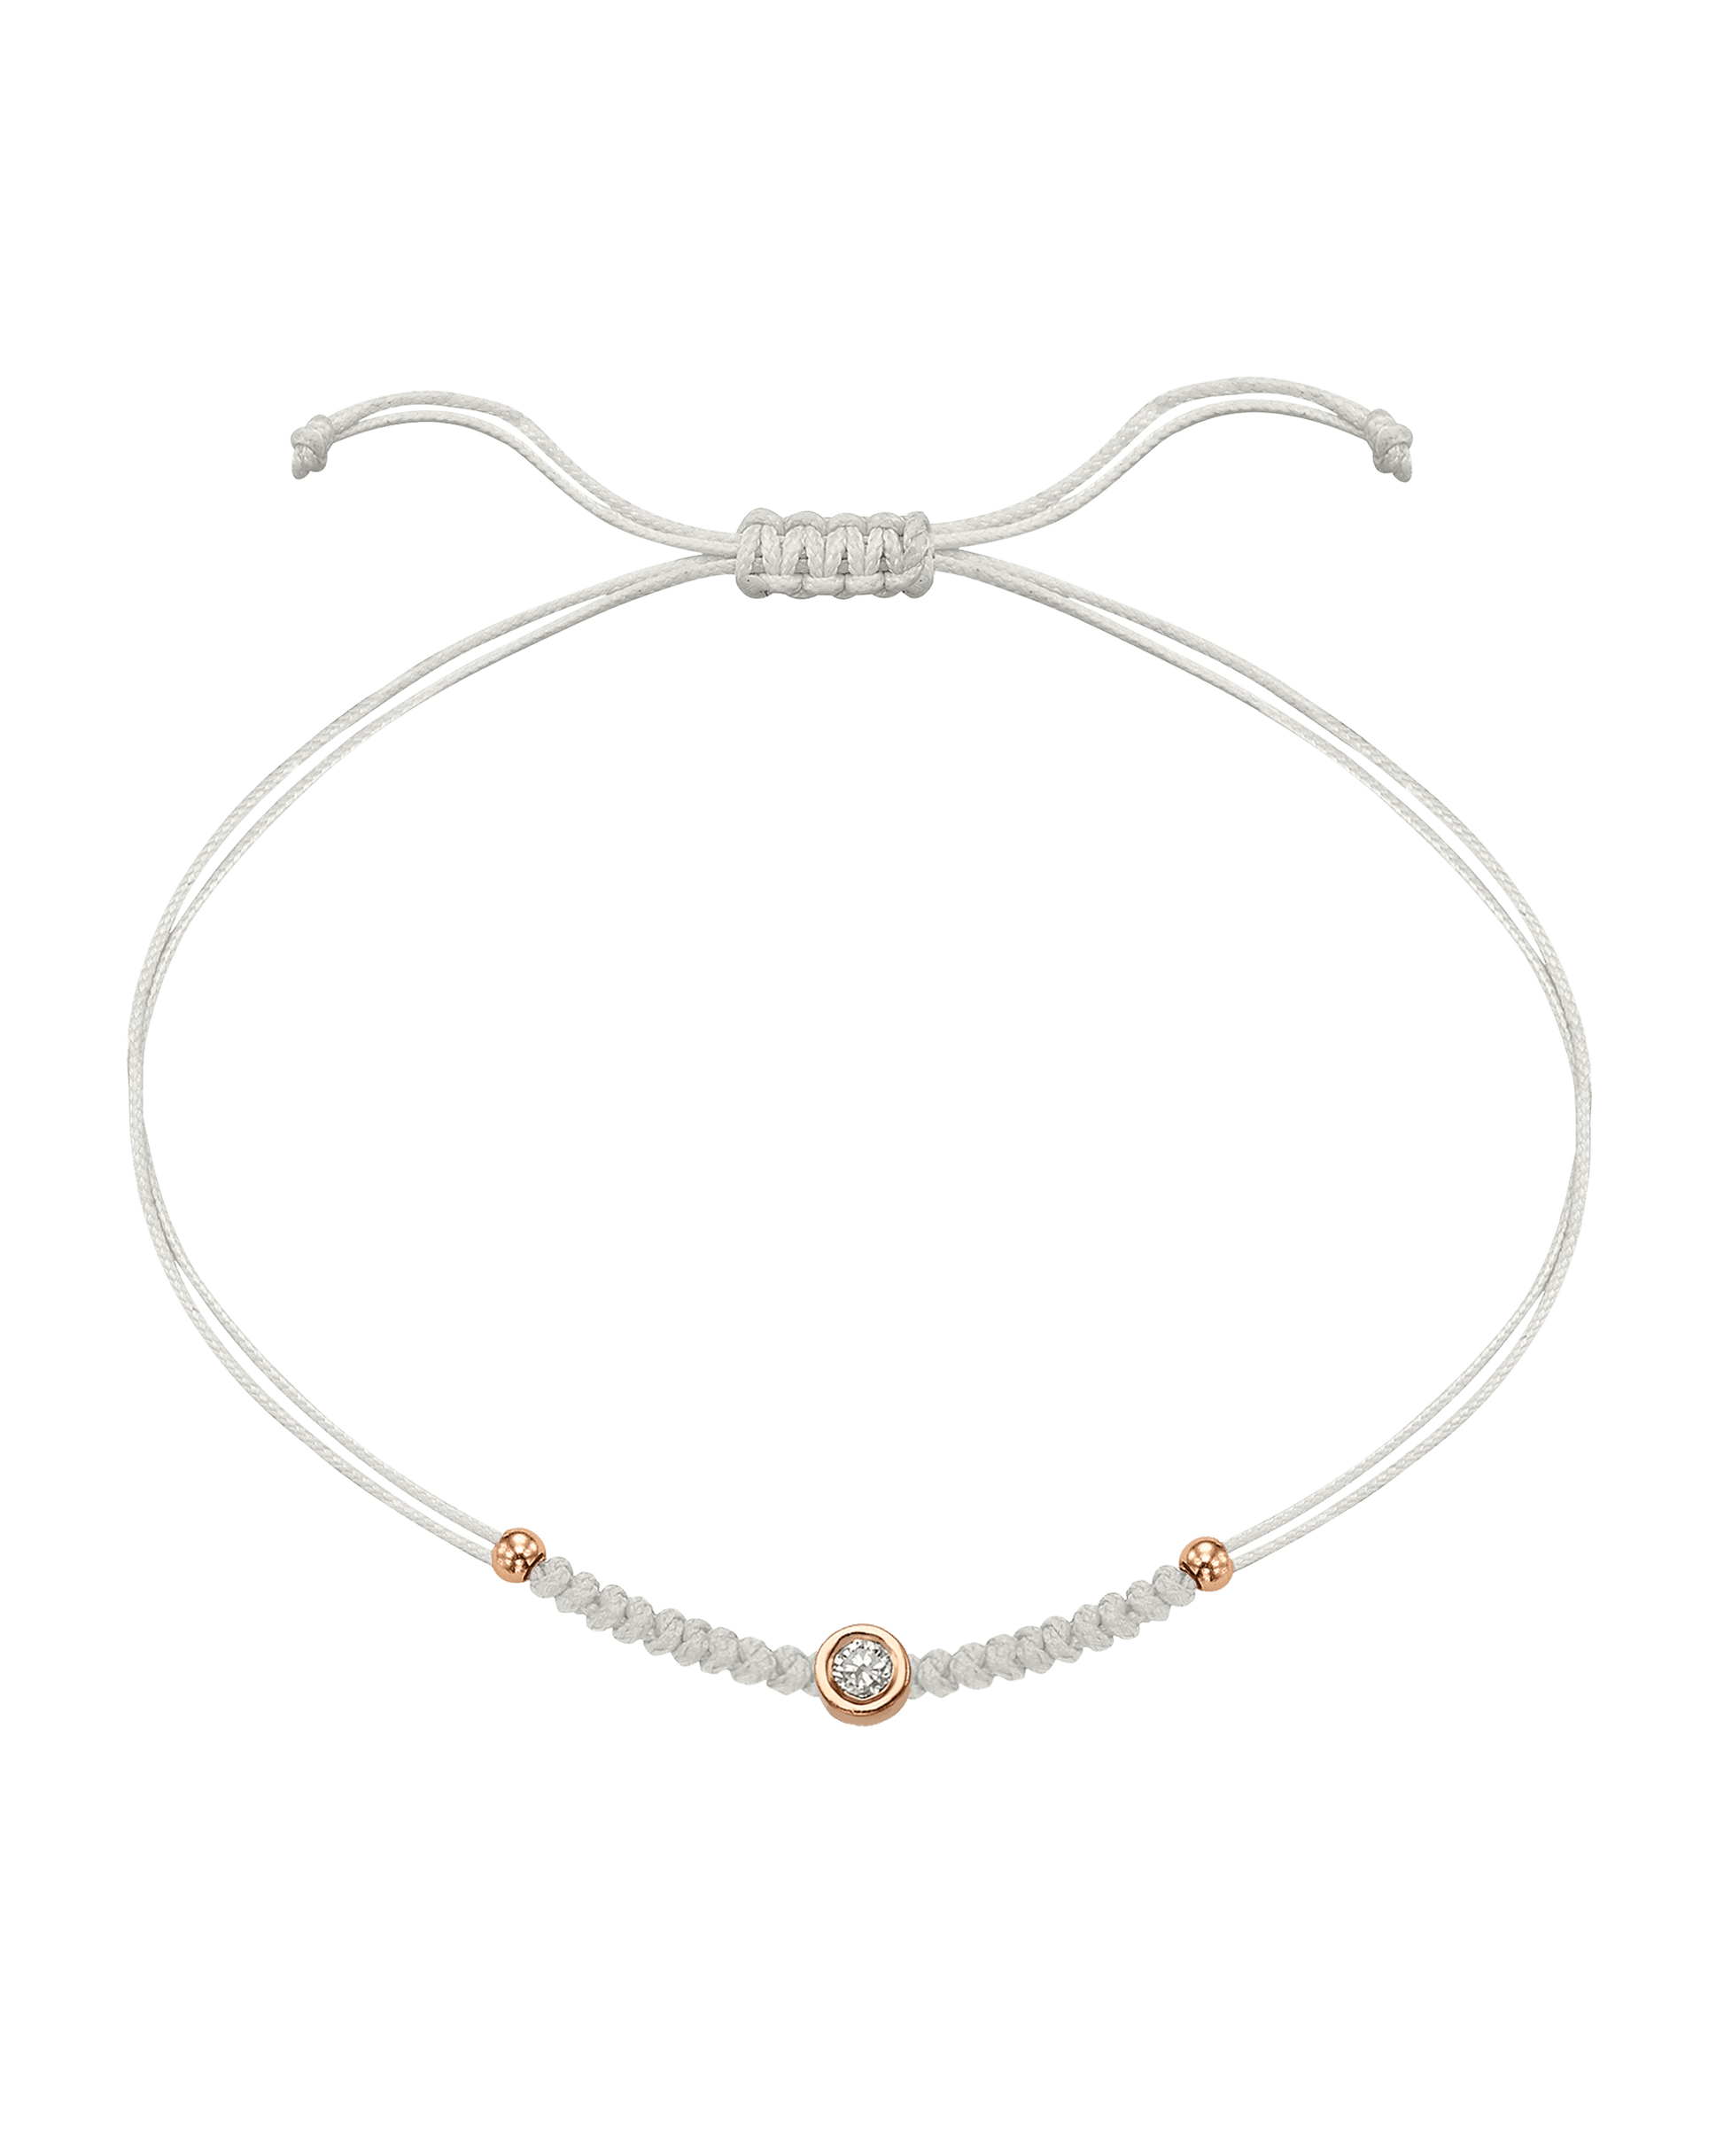 Solid Gold Sphere String of Love - 14K Rose Gold Bracelet 14K Solid Gold Pearl Medium: 0.04ct 